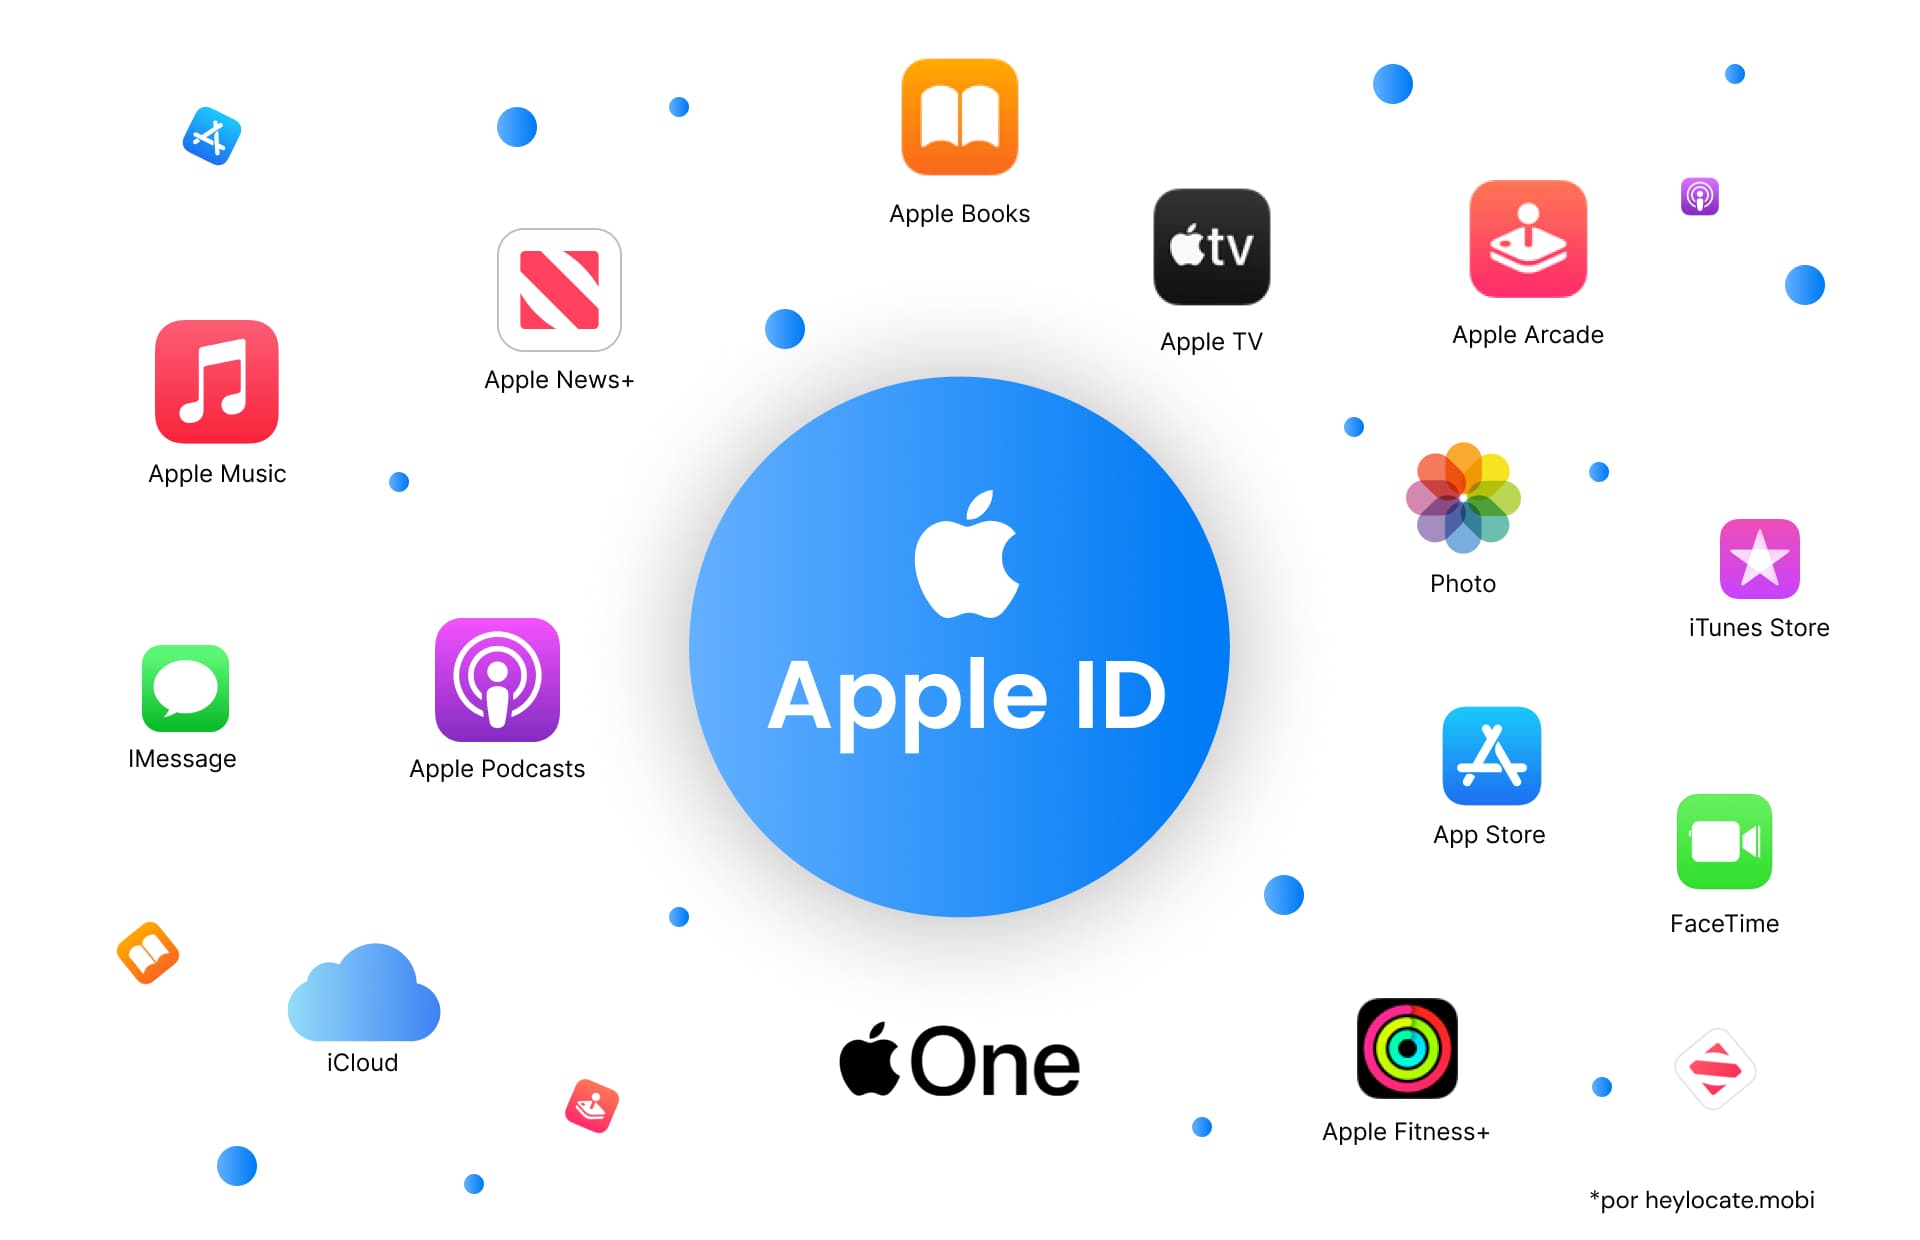 Representação gráfica de um ID Apple cercado por vários ícones de serviços da Apple, como Apple Music, Apple News+, Apple TV, Apple Books, Apple Arcade, Photo, iTunes Store, iMessage, Apple Podcasts, iCloud, App Store, FaceTime, Apple One e Apple Fitness+